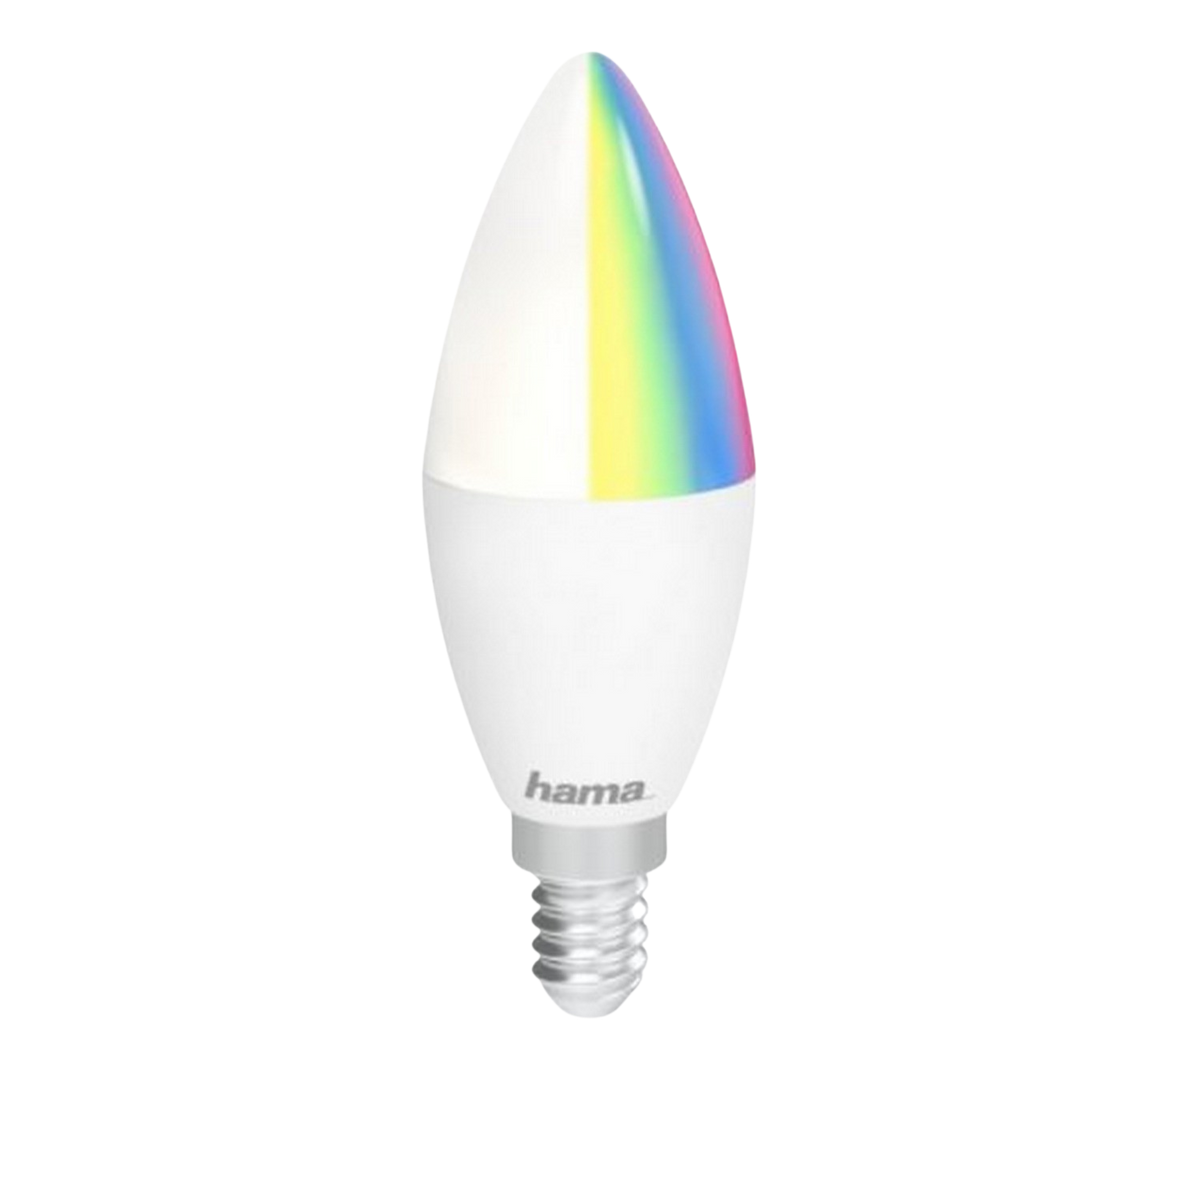 HAMA 176583 WIFI-LED-LAMPE RGB, E14 RGBW Glühbirne 5,5W Weiß